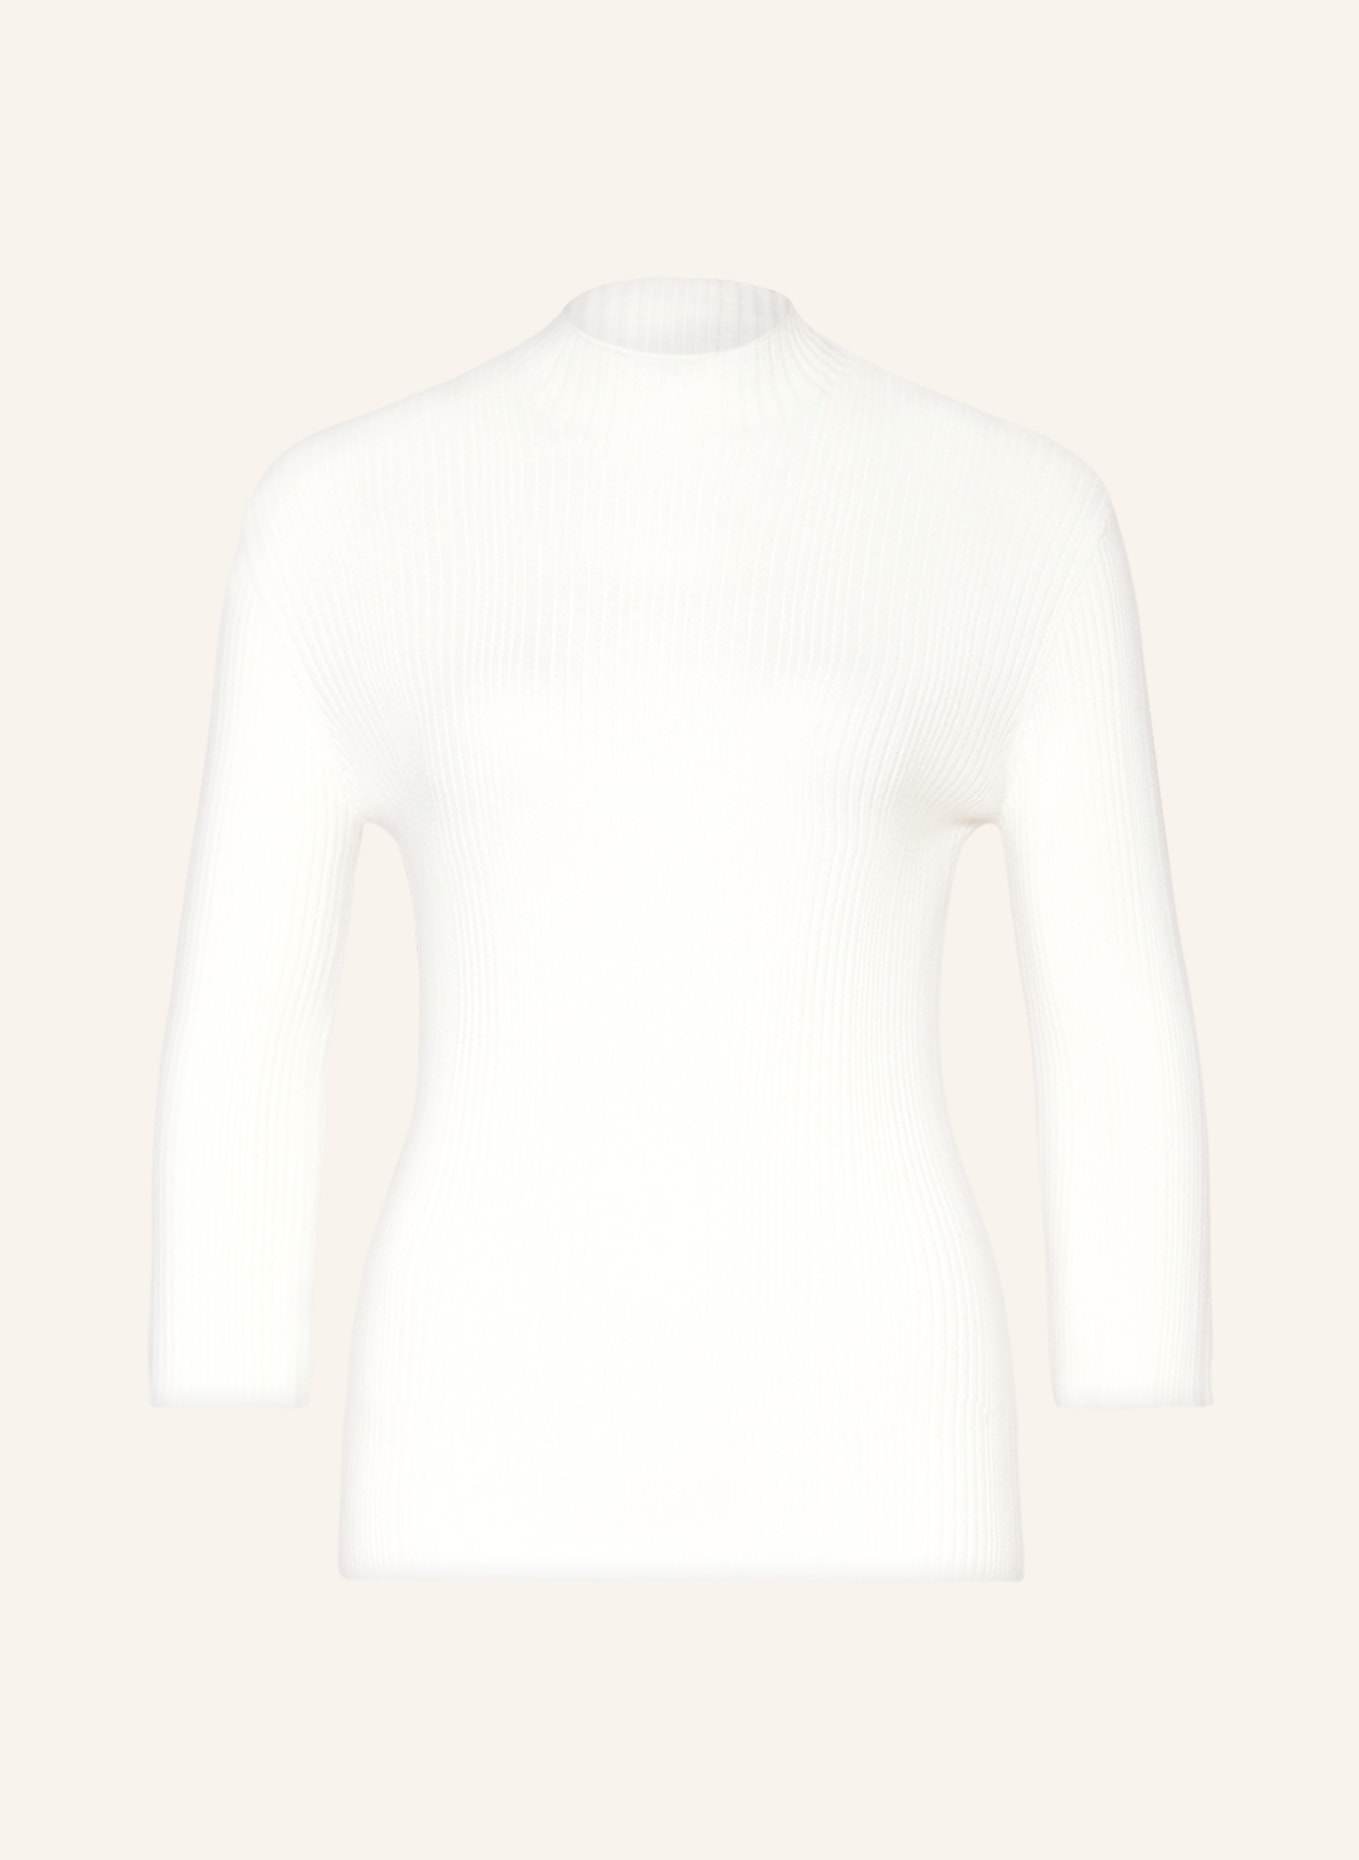 MSCH COPENHAGEN Sweater MSCHVENDELA RACHELLE with 3/4 sleeves, Color: ECRU (Image 1)